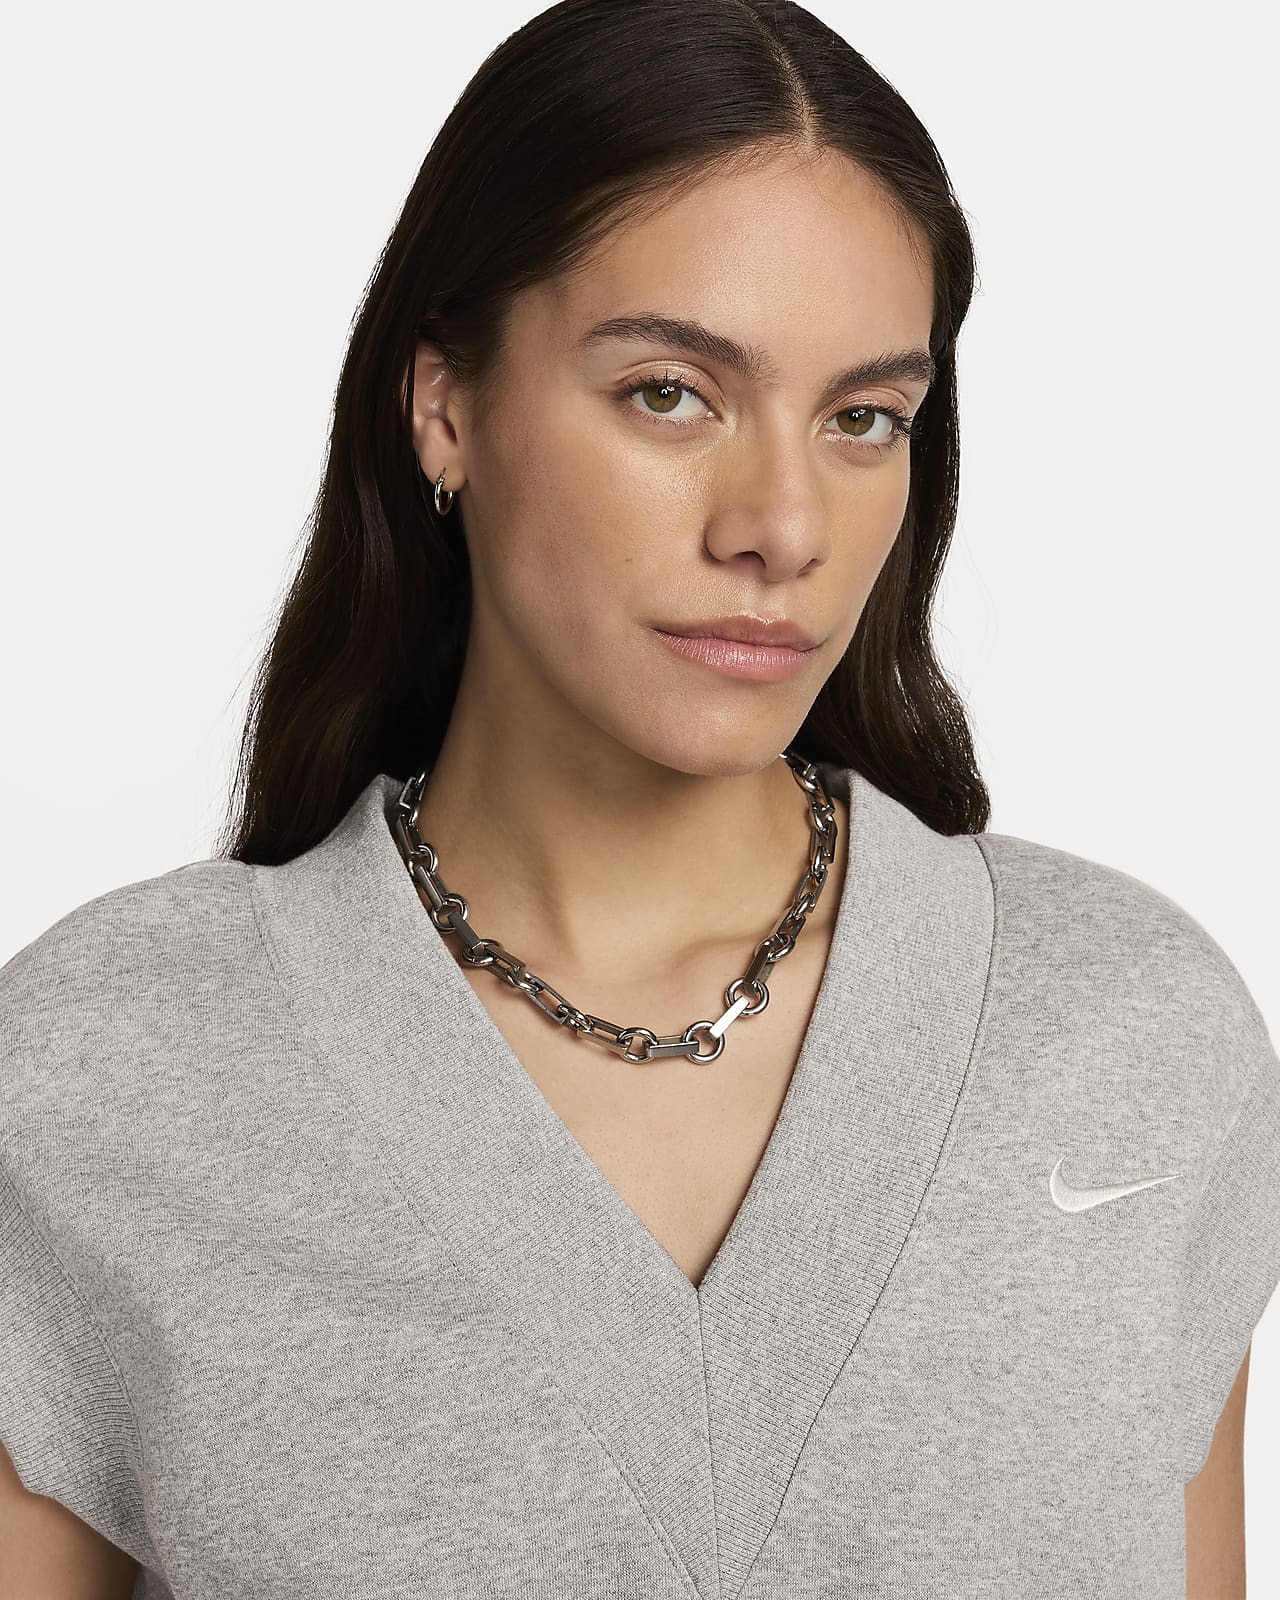 Nike Sportswear Phoenix Fleece Women's V-Neck Sweatshirt. Nike CA